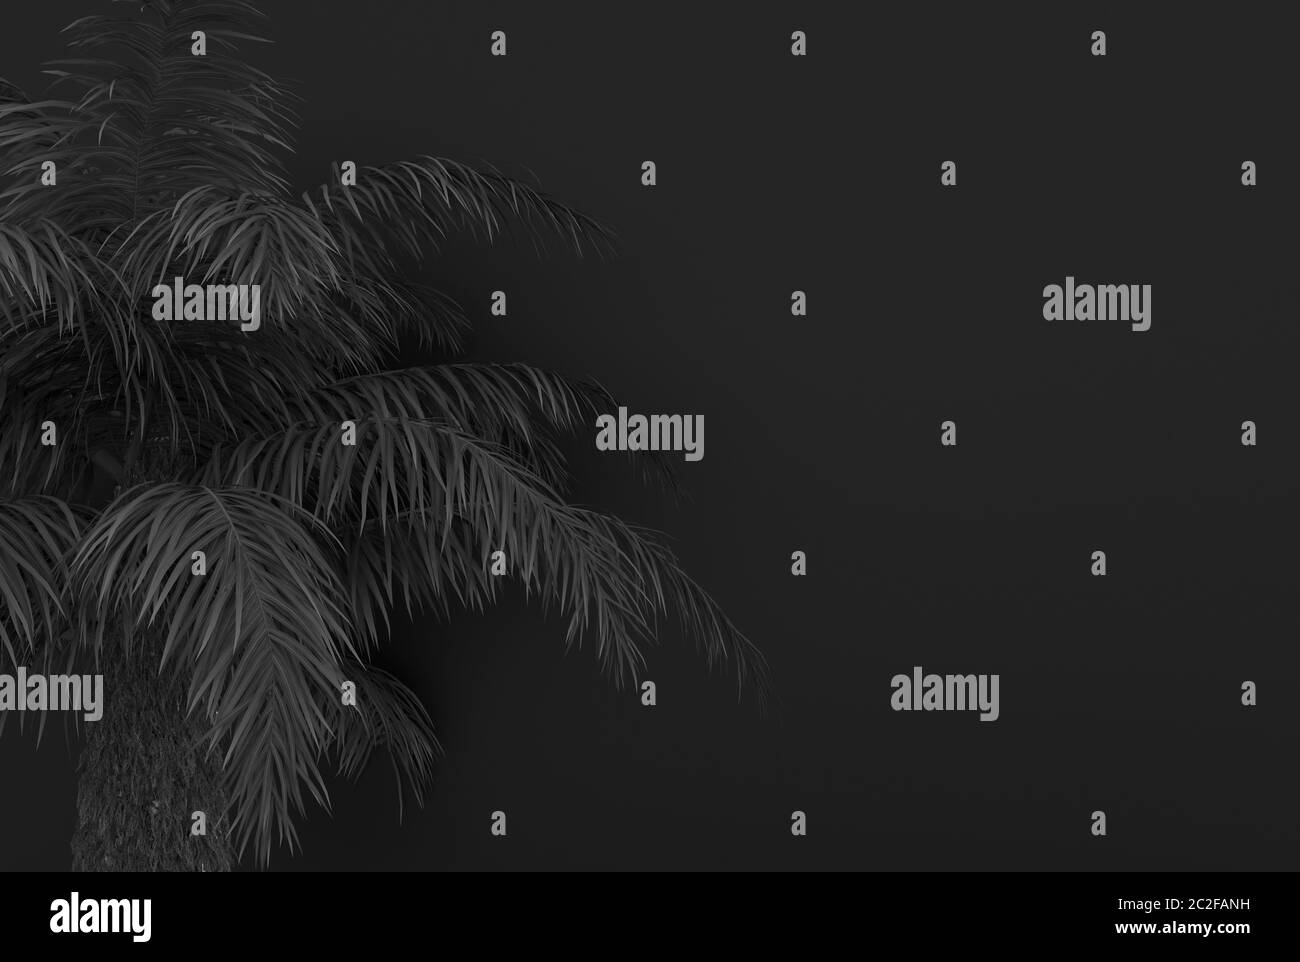 Palme mit schwarzen Palmblättern auf schwarzem Hintergrund. Schwarz-farbenes Laub. Konzeptionelle kreative Illustration mit Kopierbereich. 3D-Rendering. Stockfoto